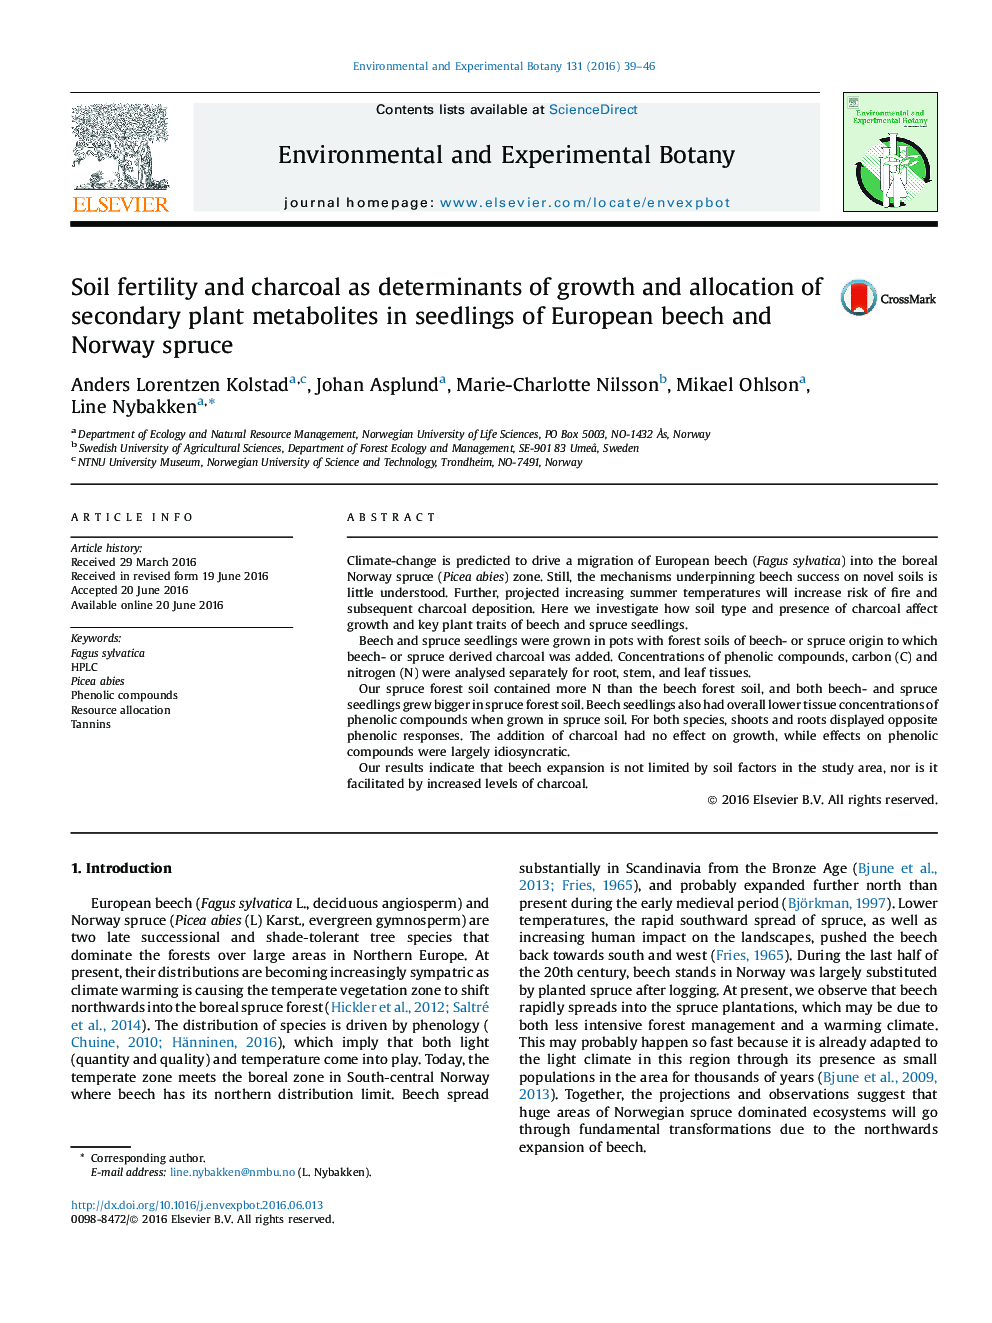 باروری خاک و زغال چوب به عنوان تعیین کننده های رشد و تخصیص متابولیت های ثانویه گیاه در نهال های کاج اروپایی راش و نرو ارجح 